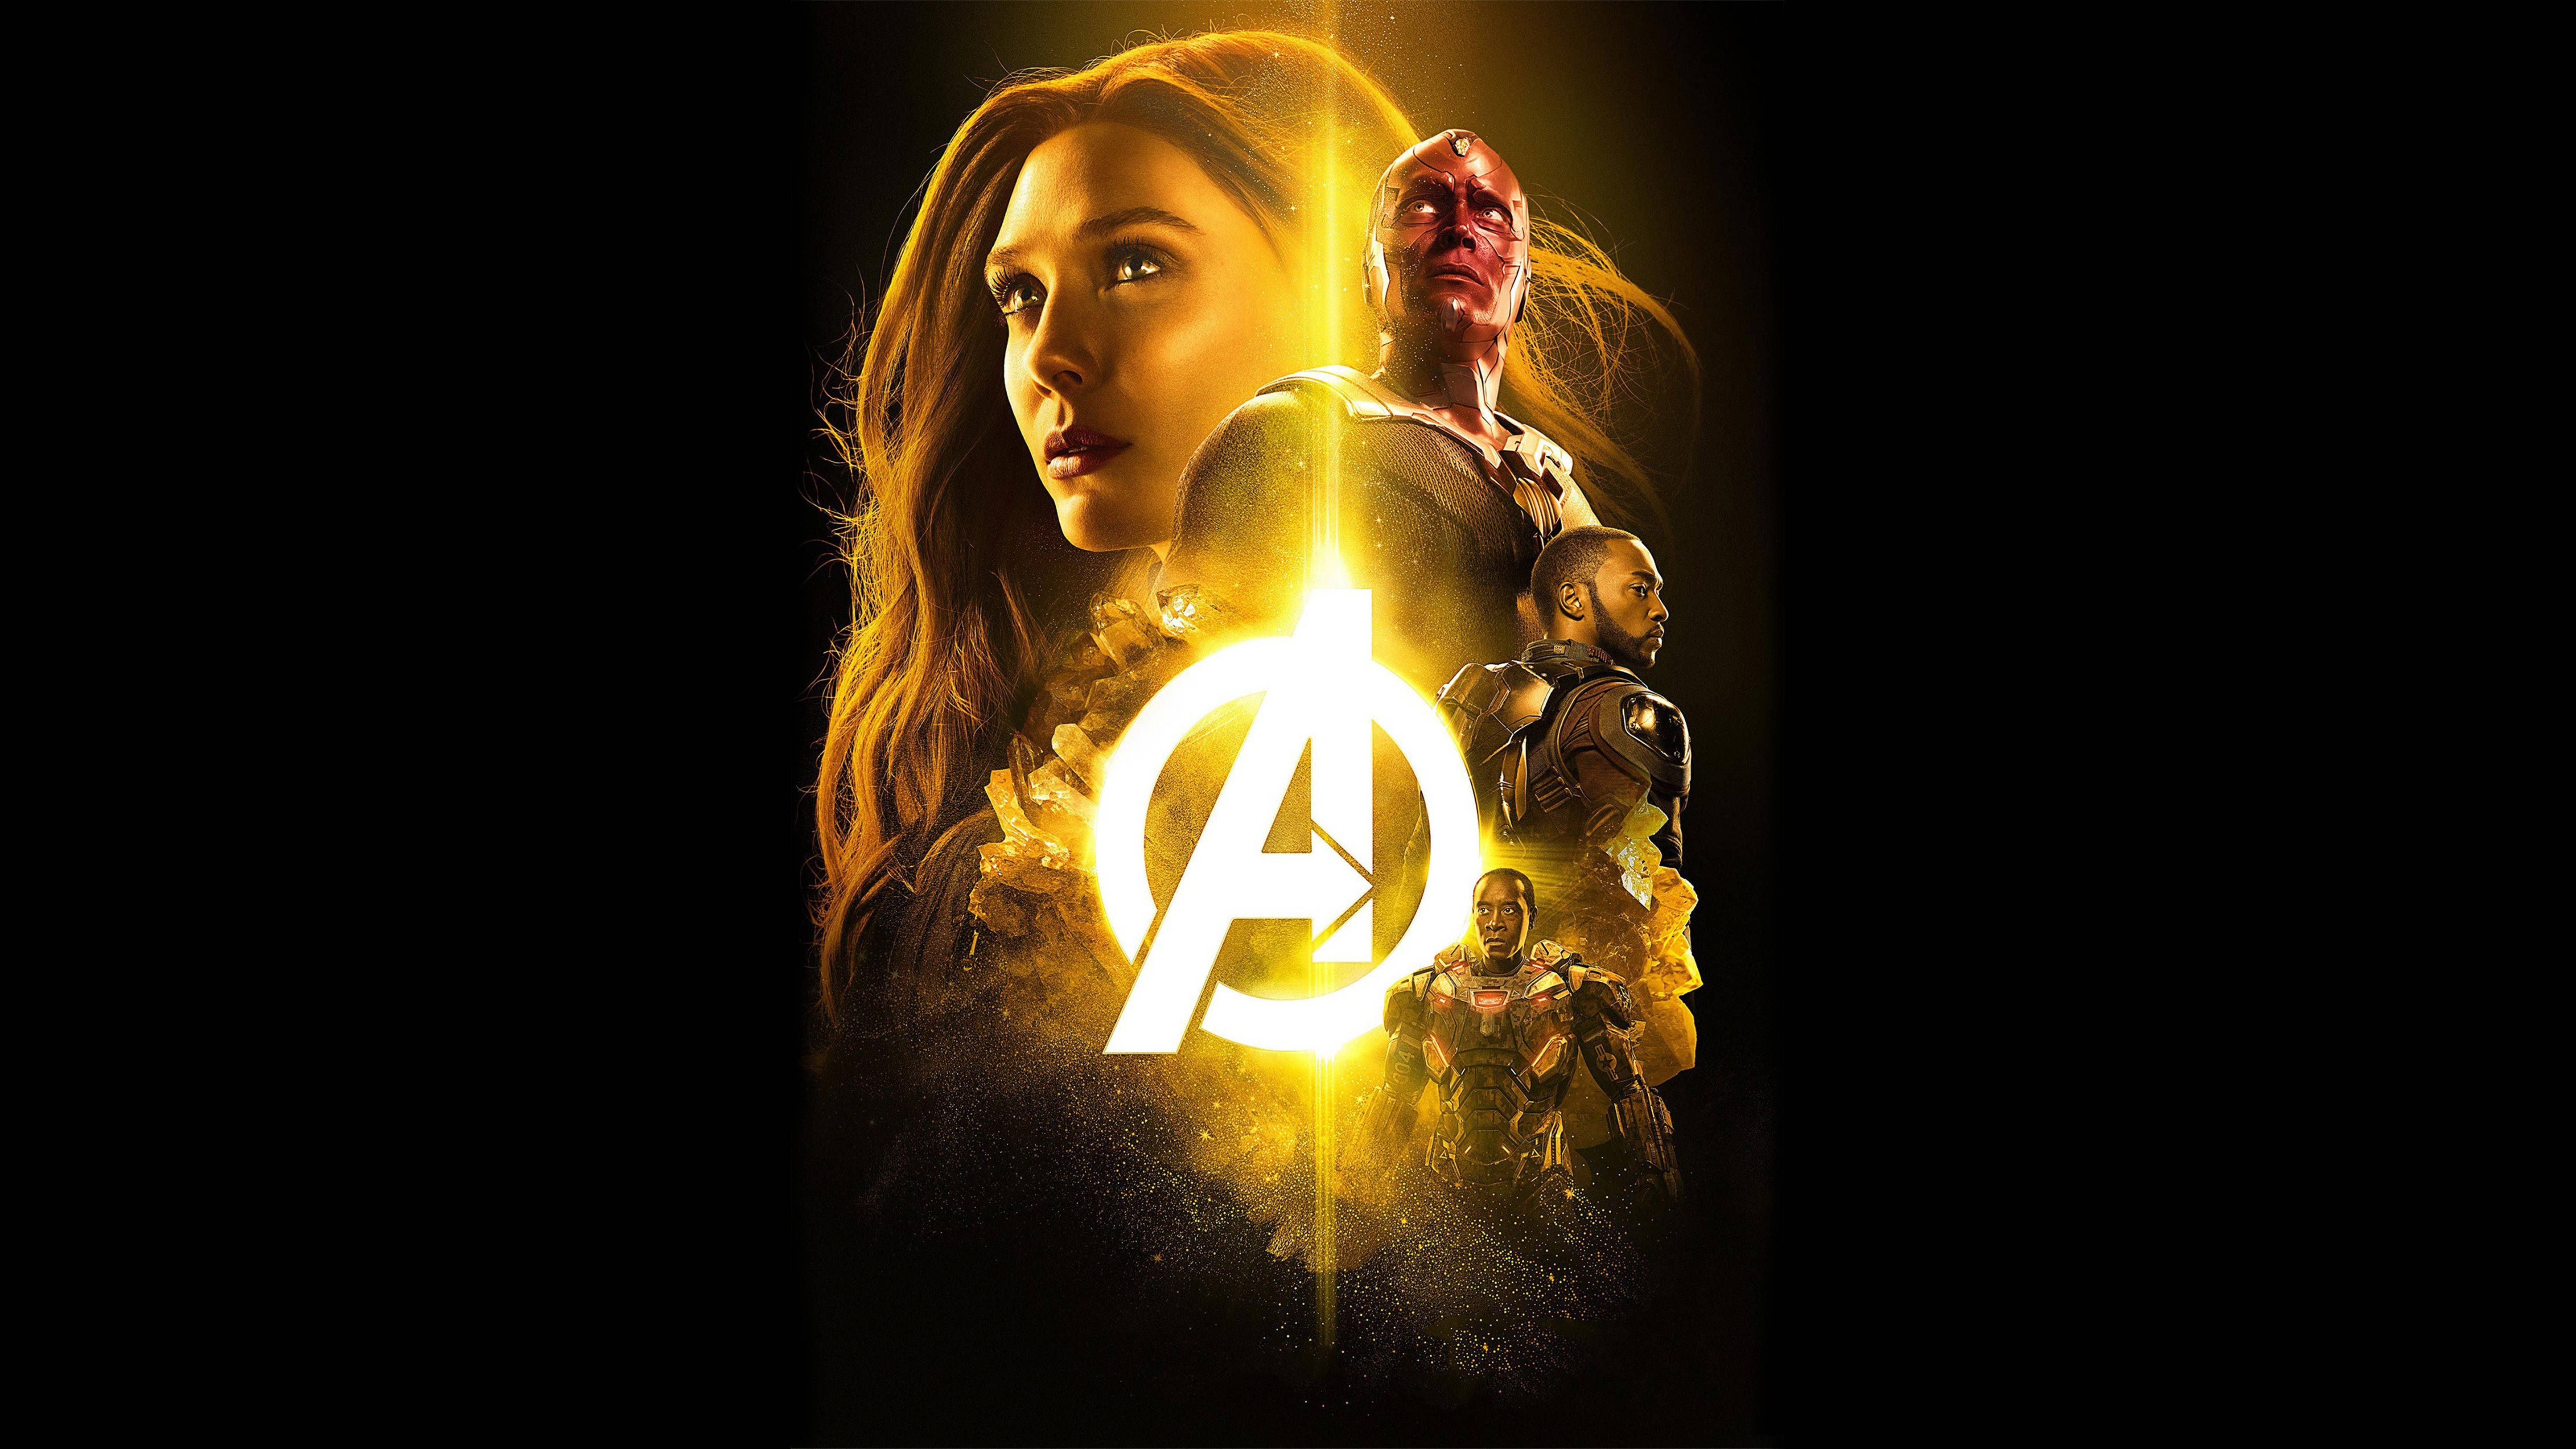 Wanda Avengers Poster 4k